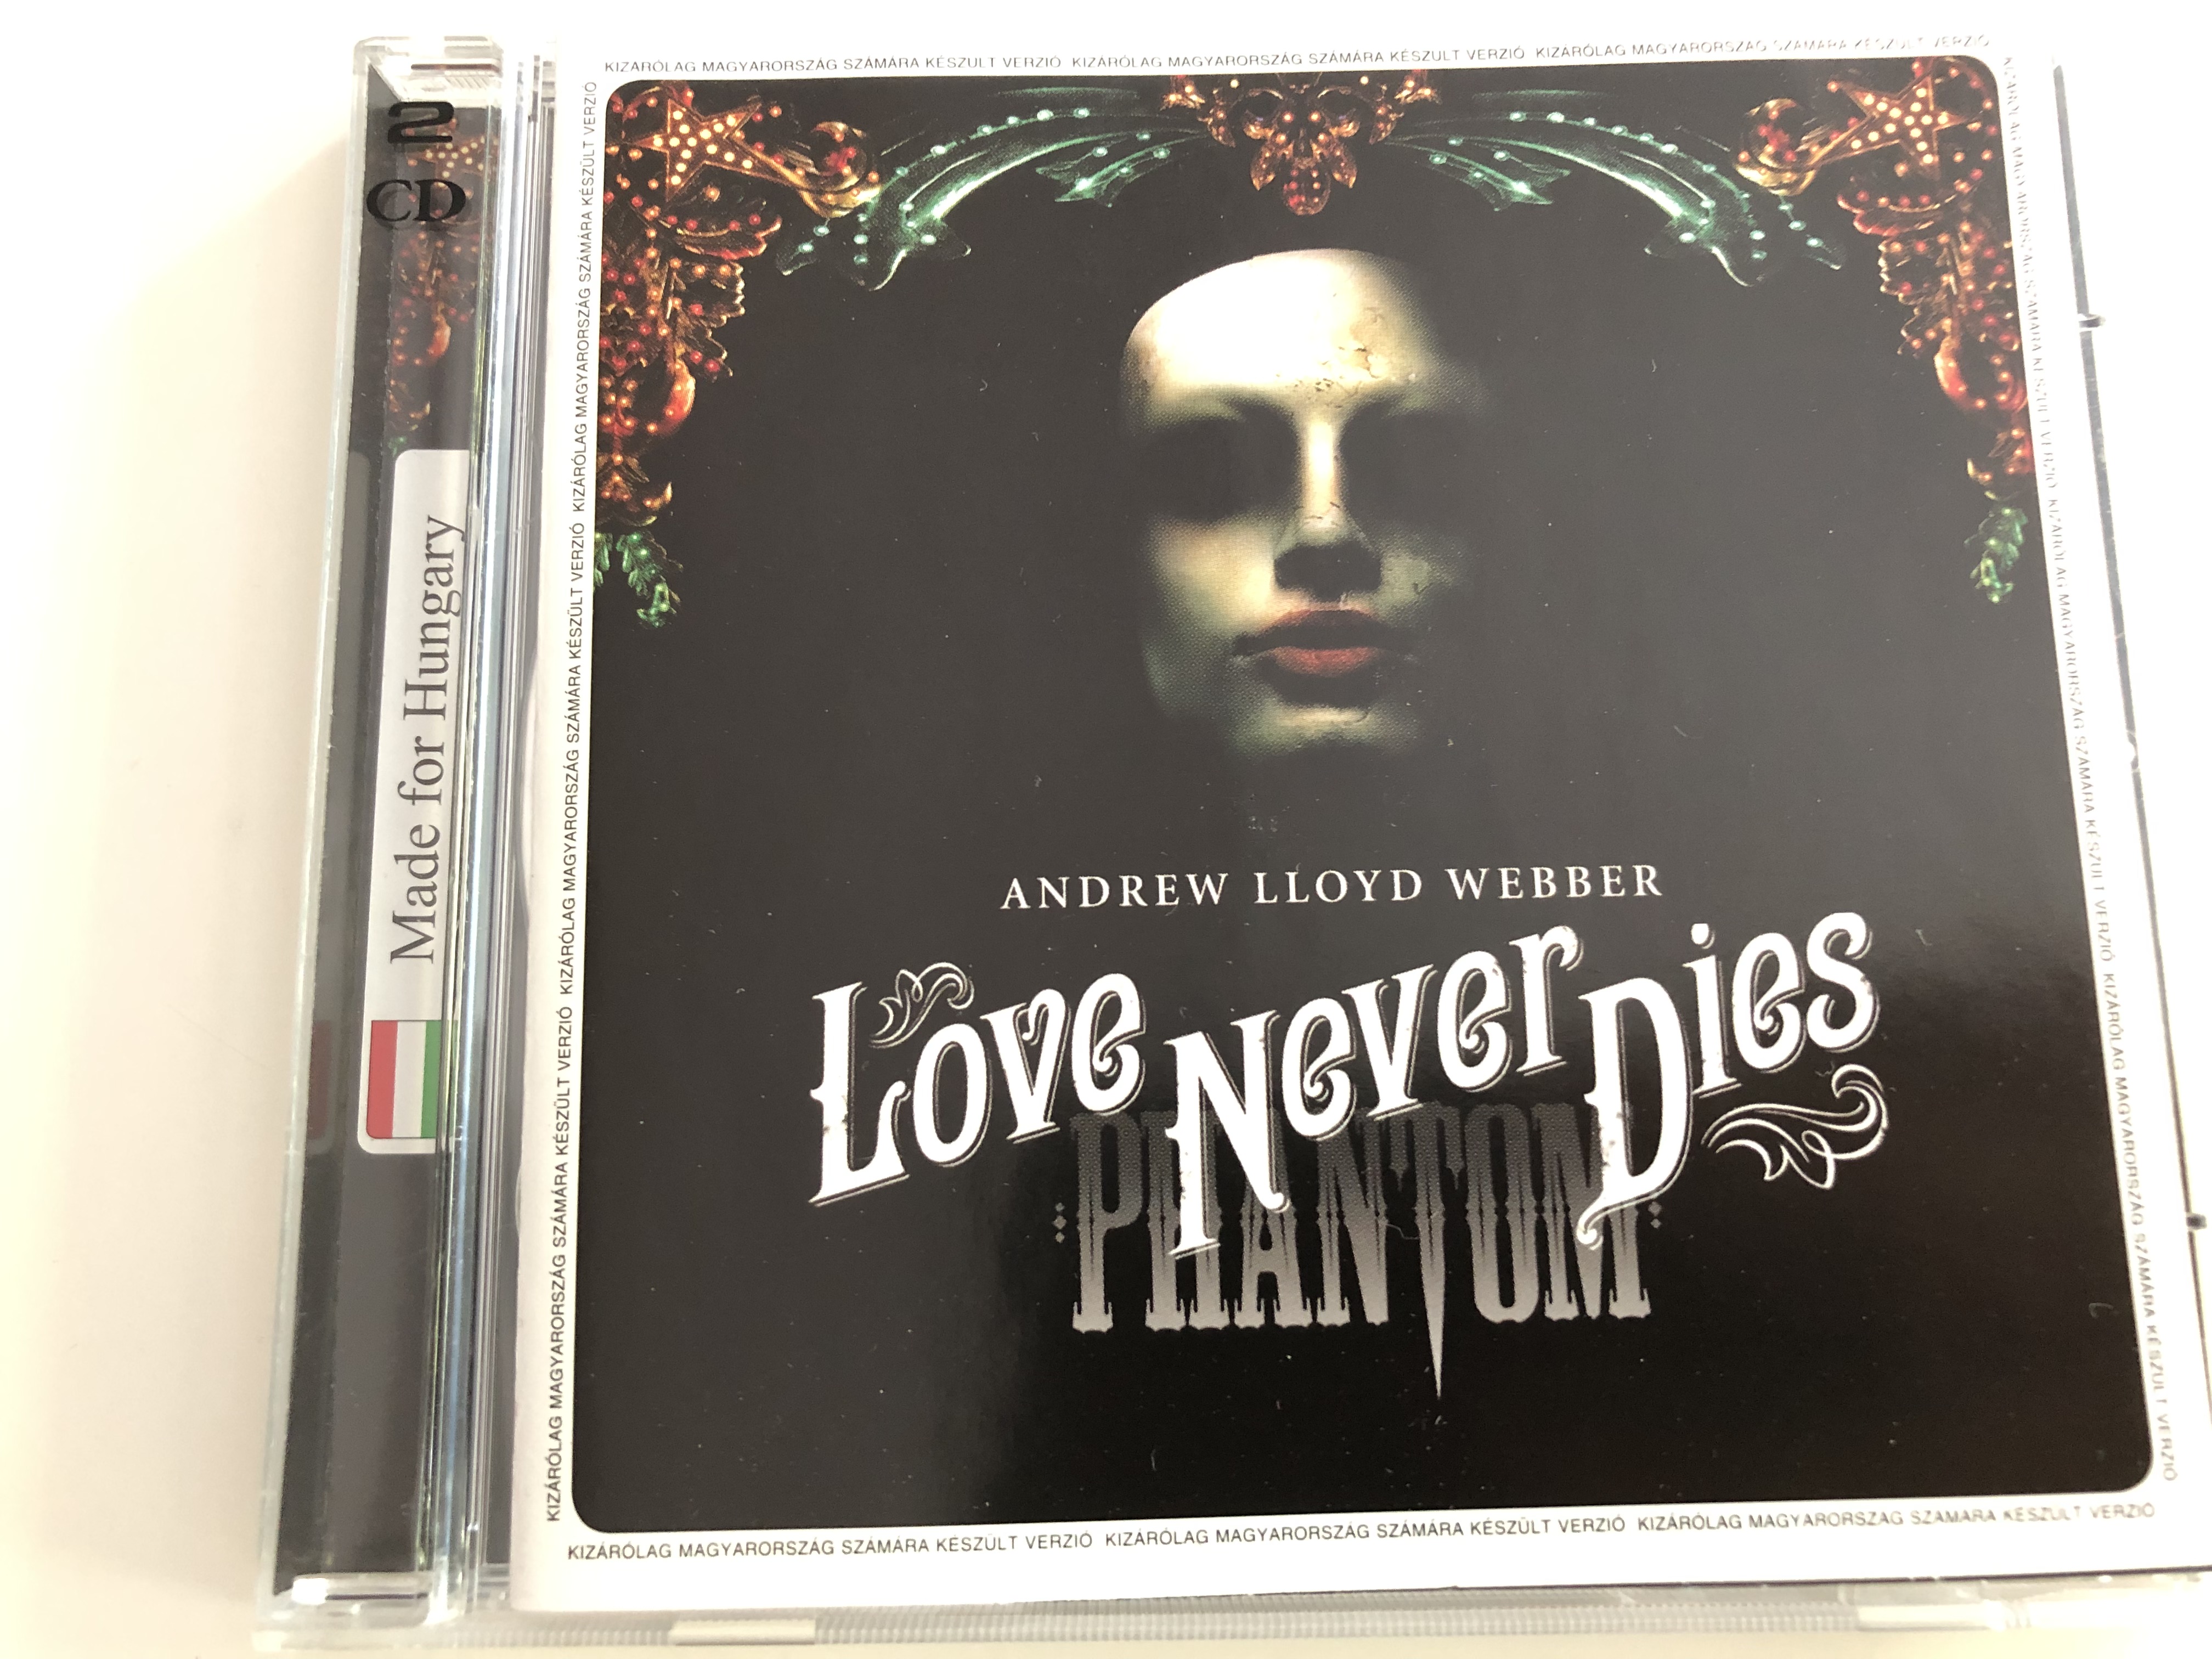 andrew-lloyd-webber-love-never-dies-phantom-lyrics-glenn-slater-conducted-by-simon-lee-2-disc-audio-set-2010-1-.jpg